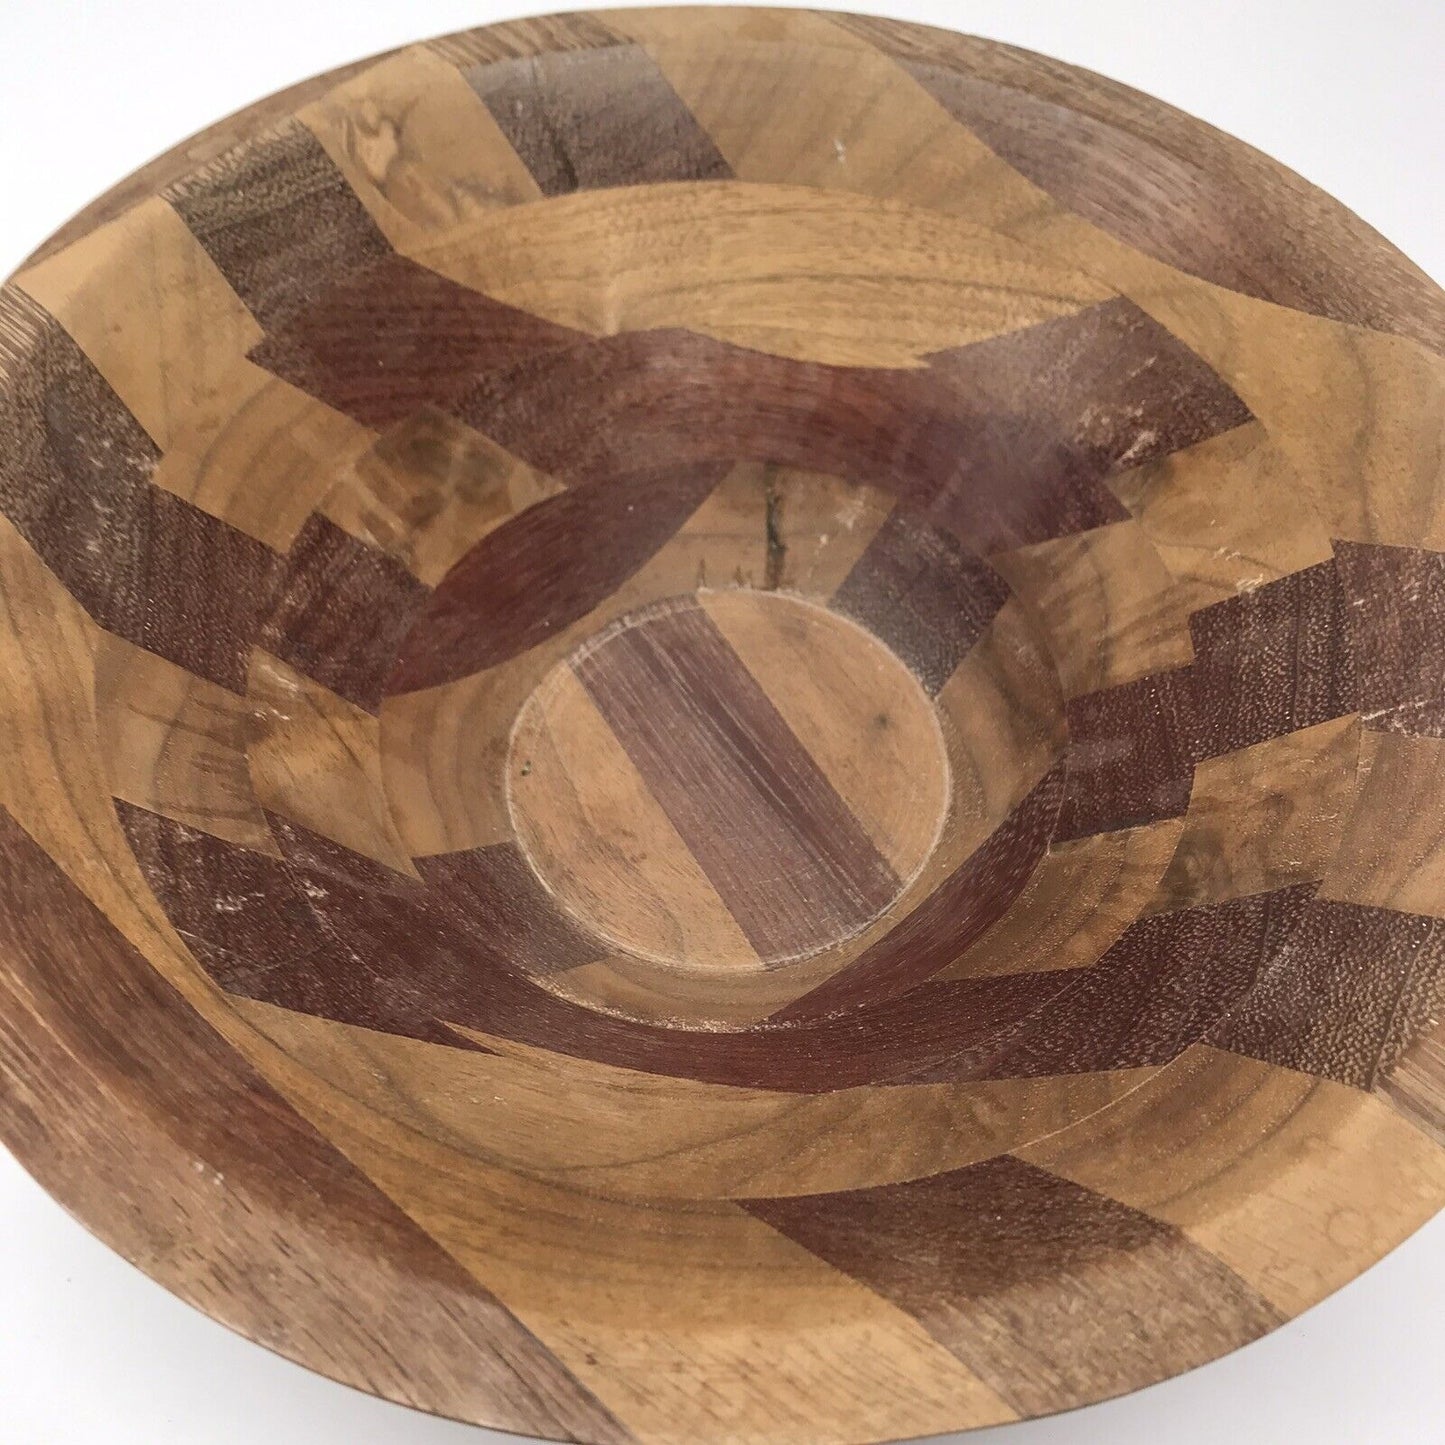 Vintage Wood 9” Serving Bowl